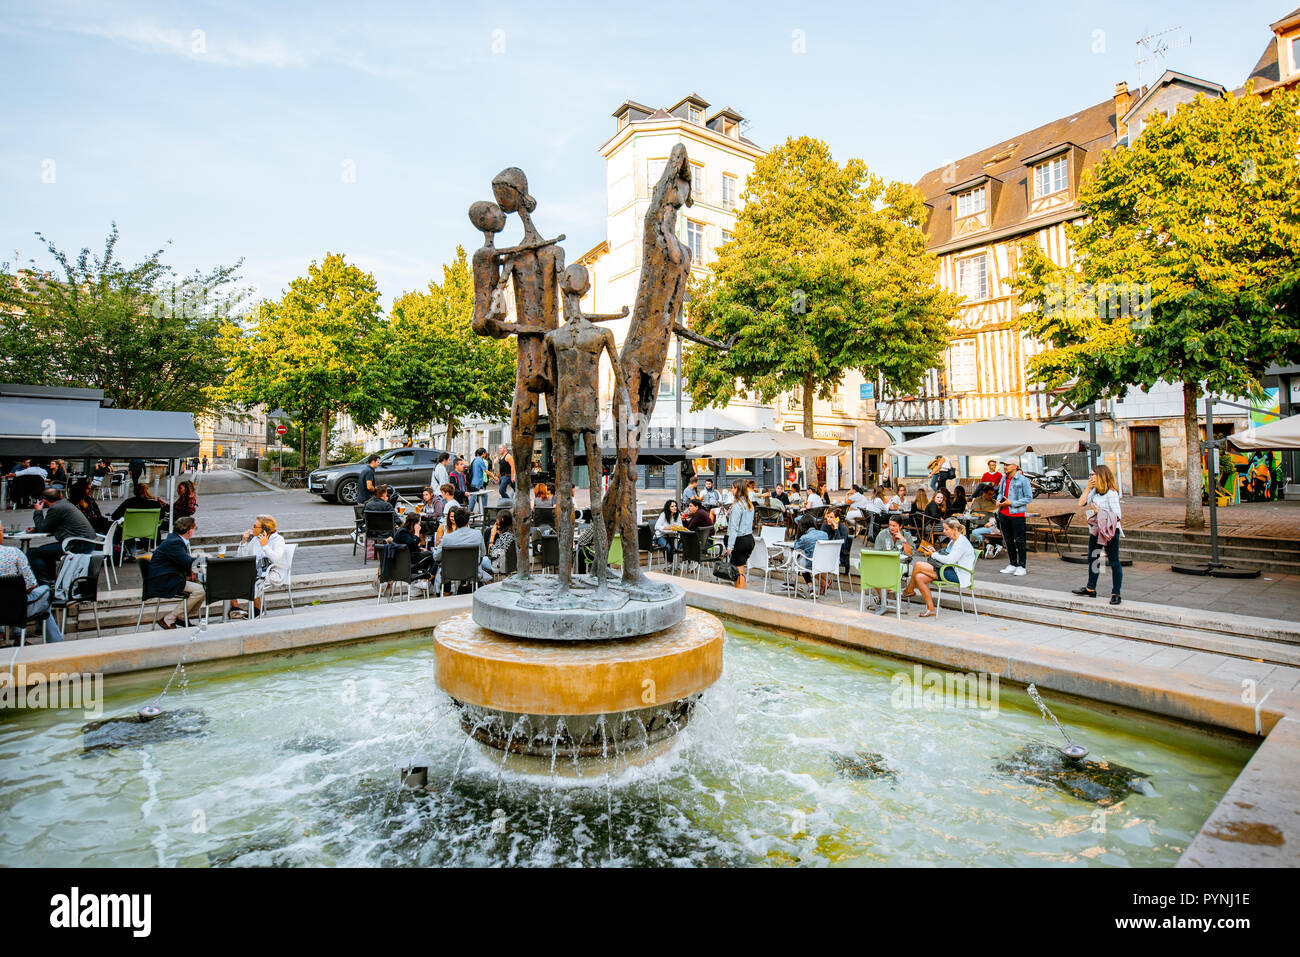 ROUEN, FRANCE - 03 septembre 2017 : fontaine moderne sculptures sur la place de la vieille ville de la ville de Rouen, capitale de Normandie en France Banque D'Images